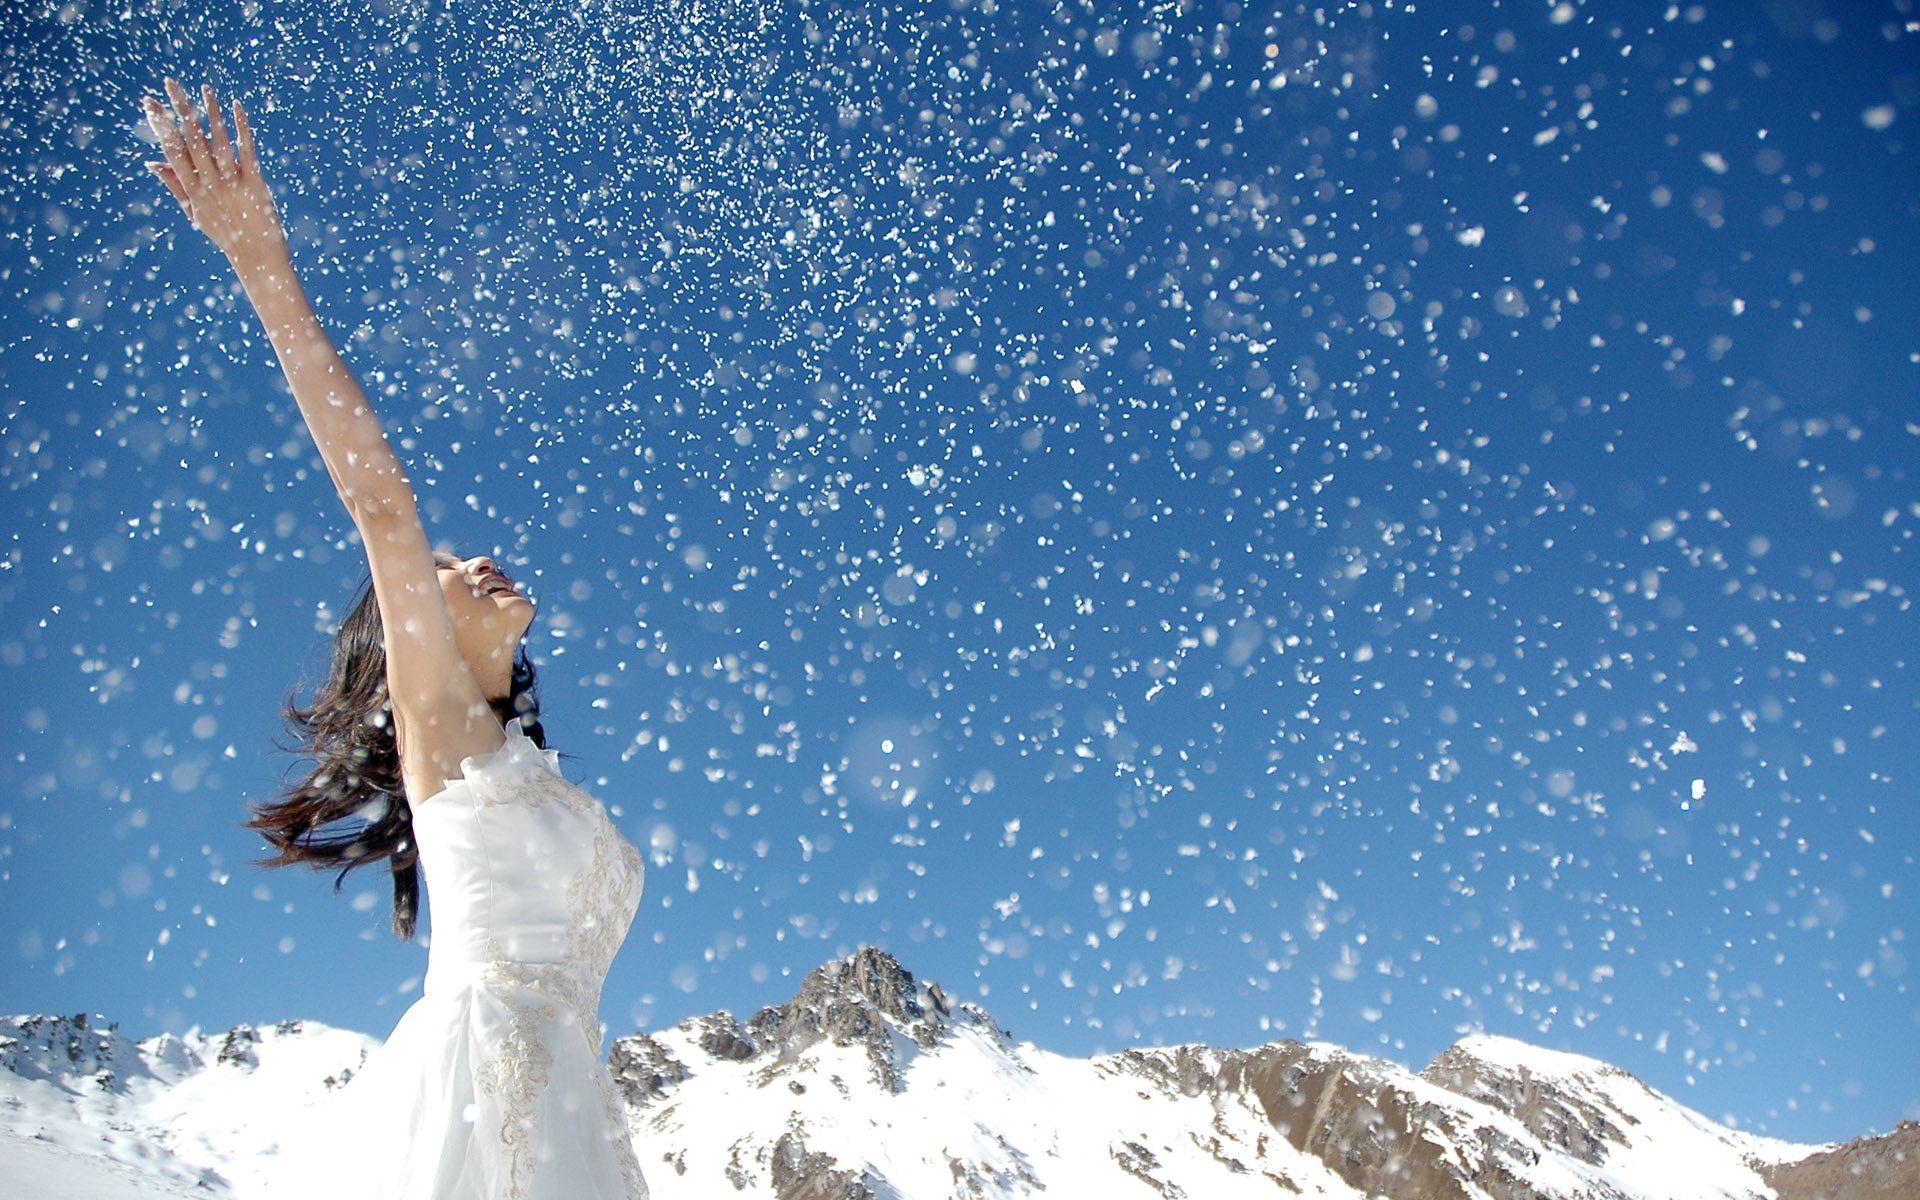 Сальвадоре падает снег. Снег радость. Счастье снег. Девушка в снегу. Снег падает с неба.